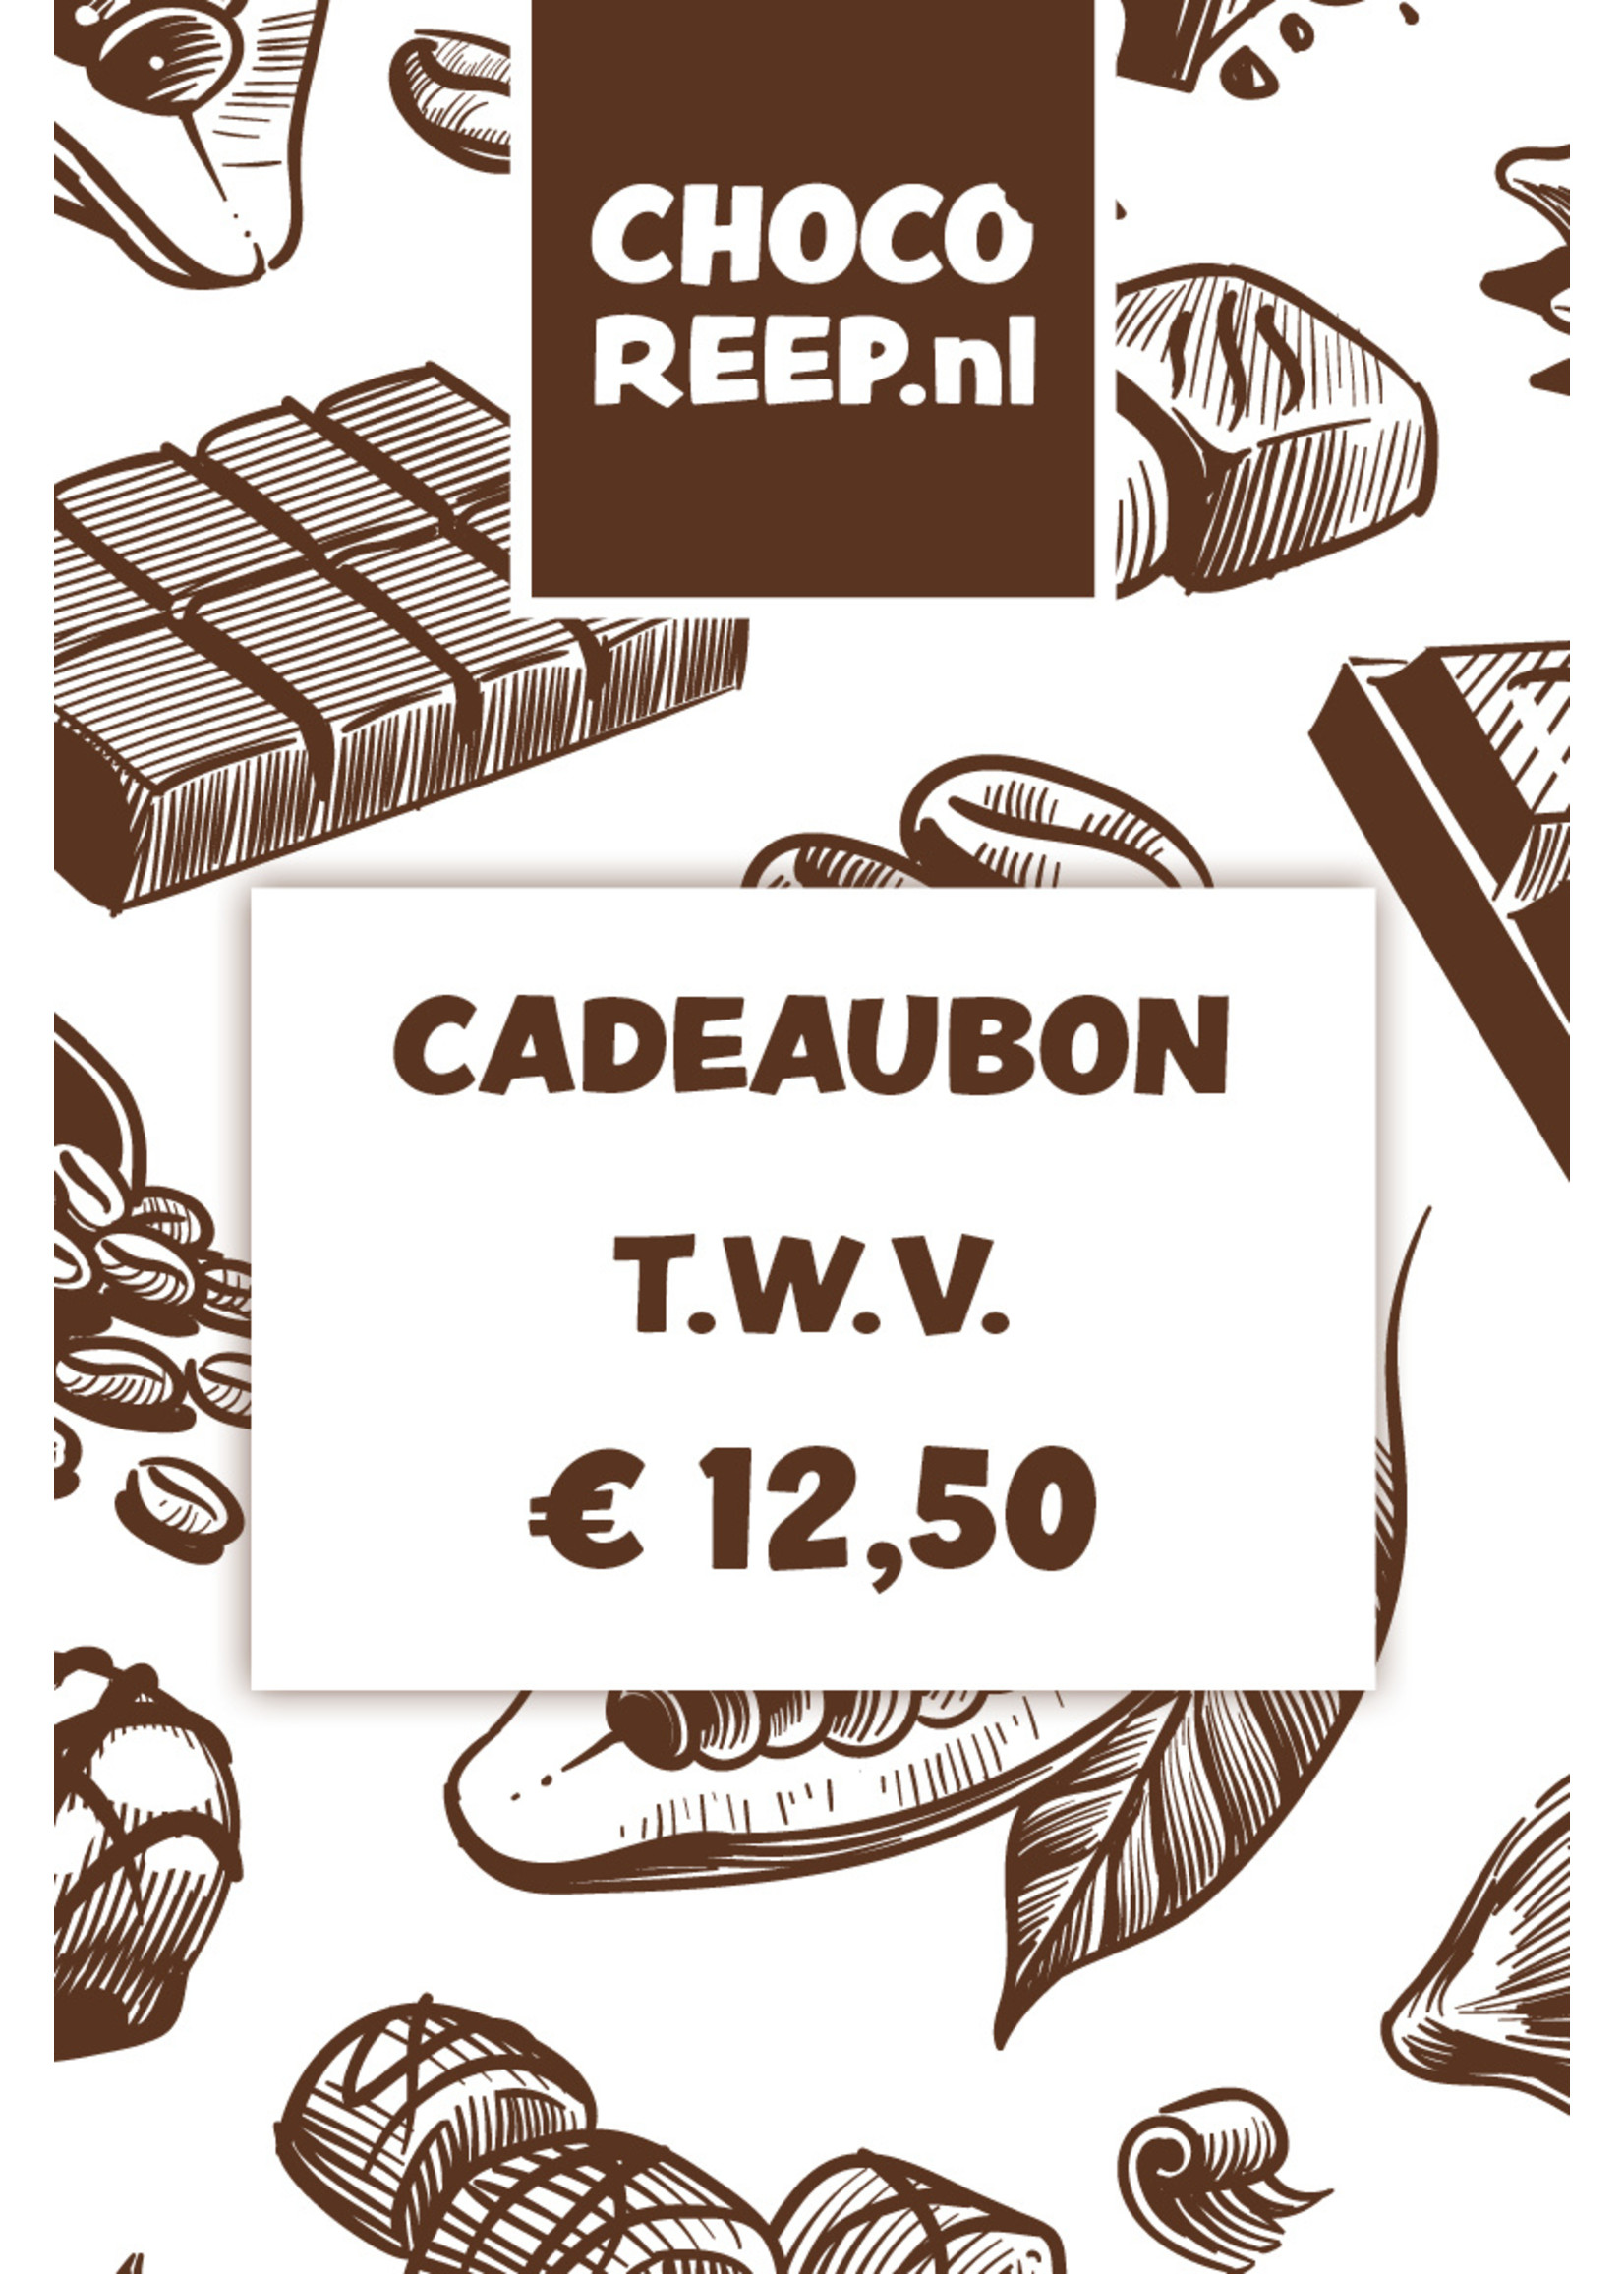 Cadeaubon t.w.v. € 12,50